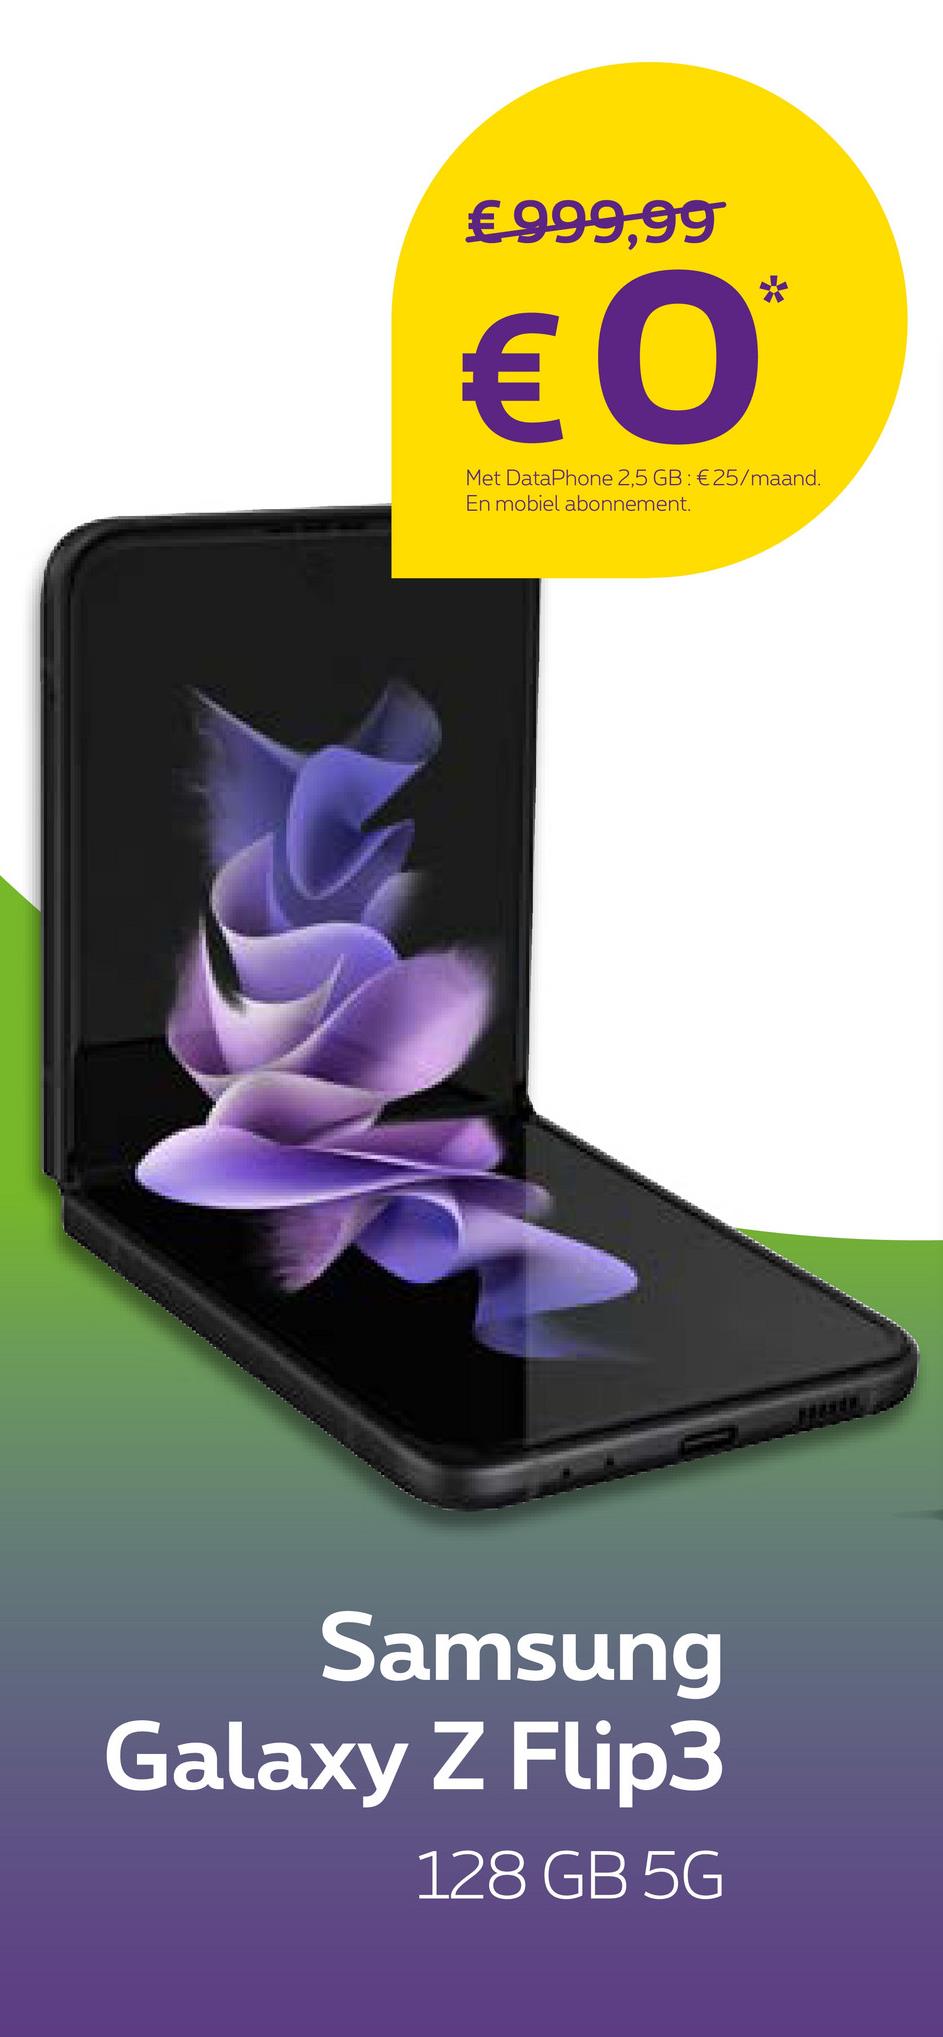 €999,99
€ 0
Met DataPhone 2,5 GB: € 25/maand.
En mobiel abonnement.
Samsung
Galaxy Z Flip3
128 GB 5G
